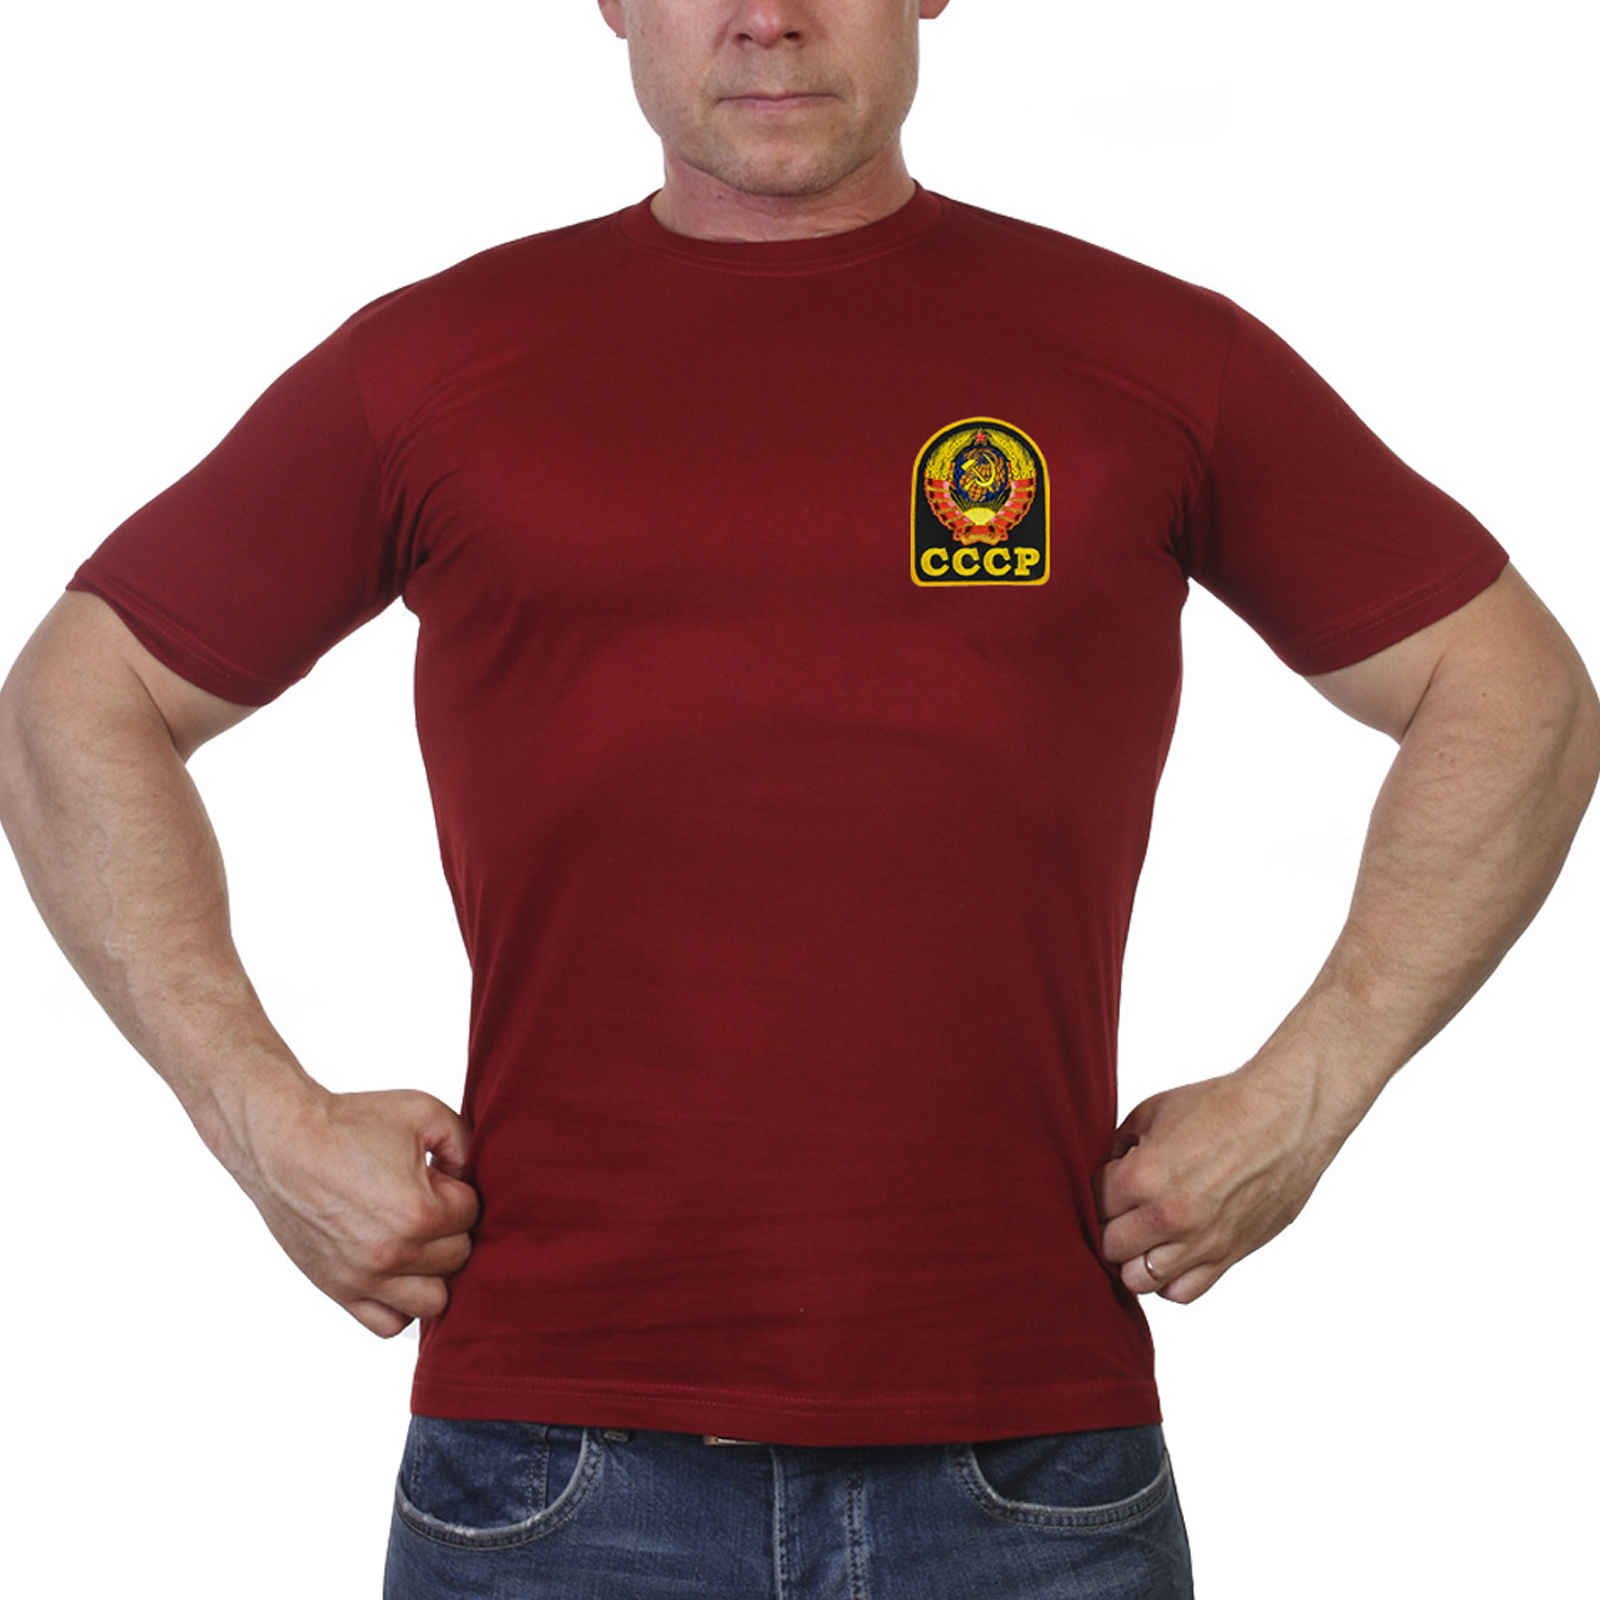 Недорогая краповая футболка СССР